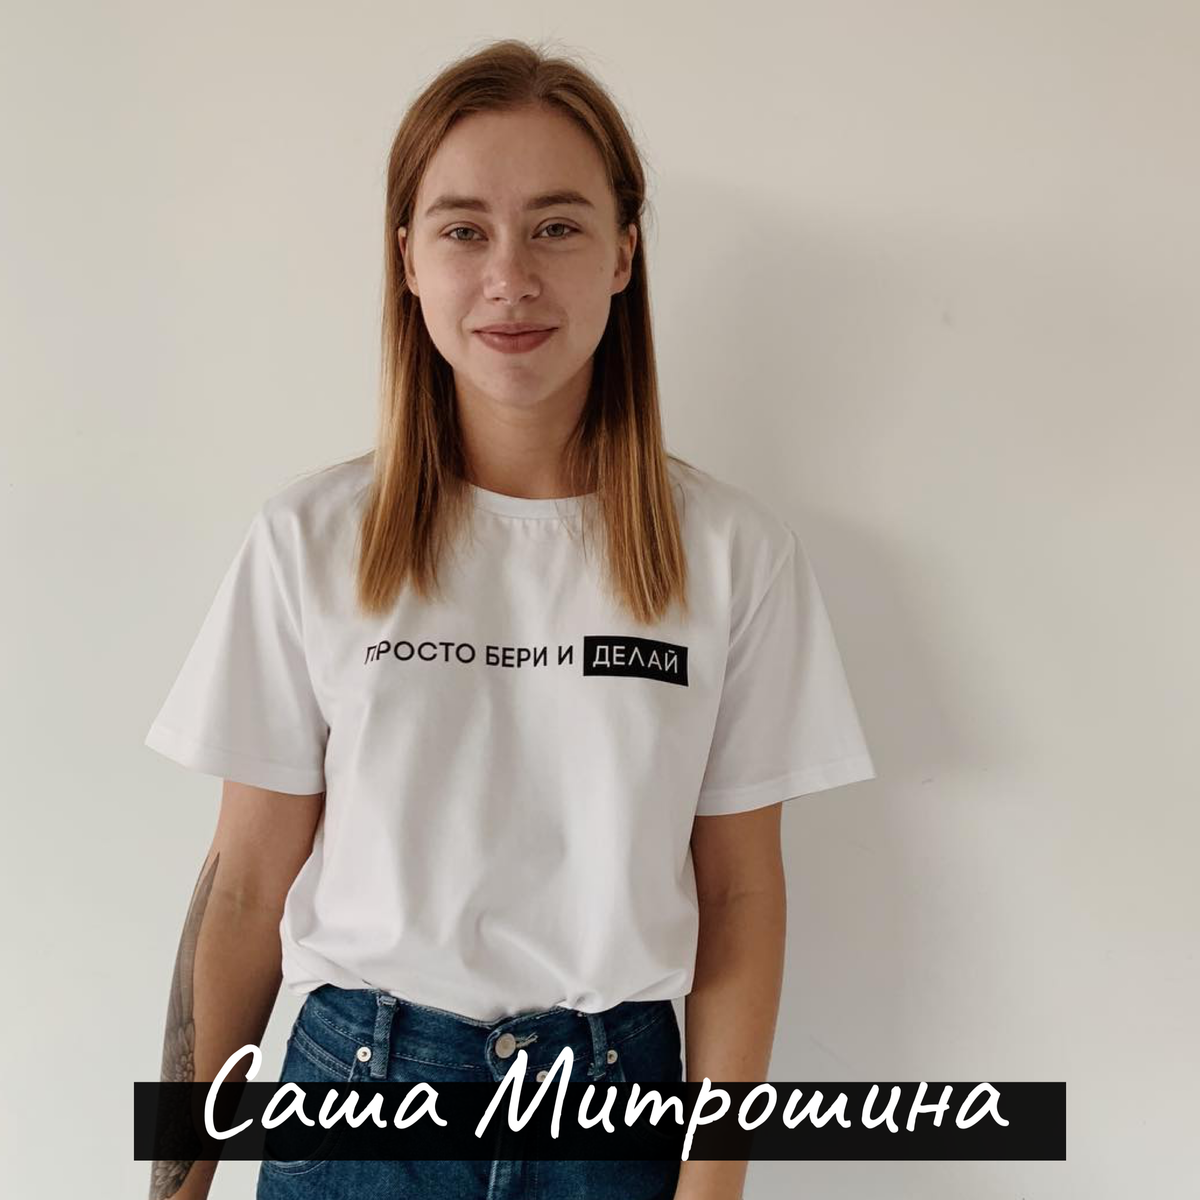 Александра митрошина. как самый умный блоггер россии зарабатывает миллионы на инстаграм